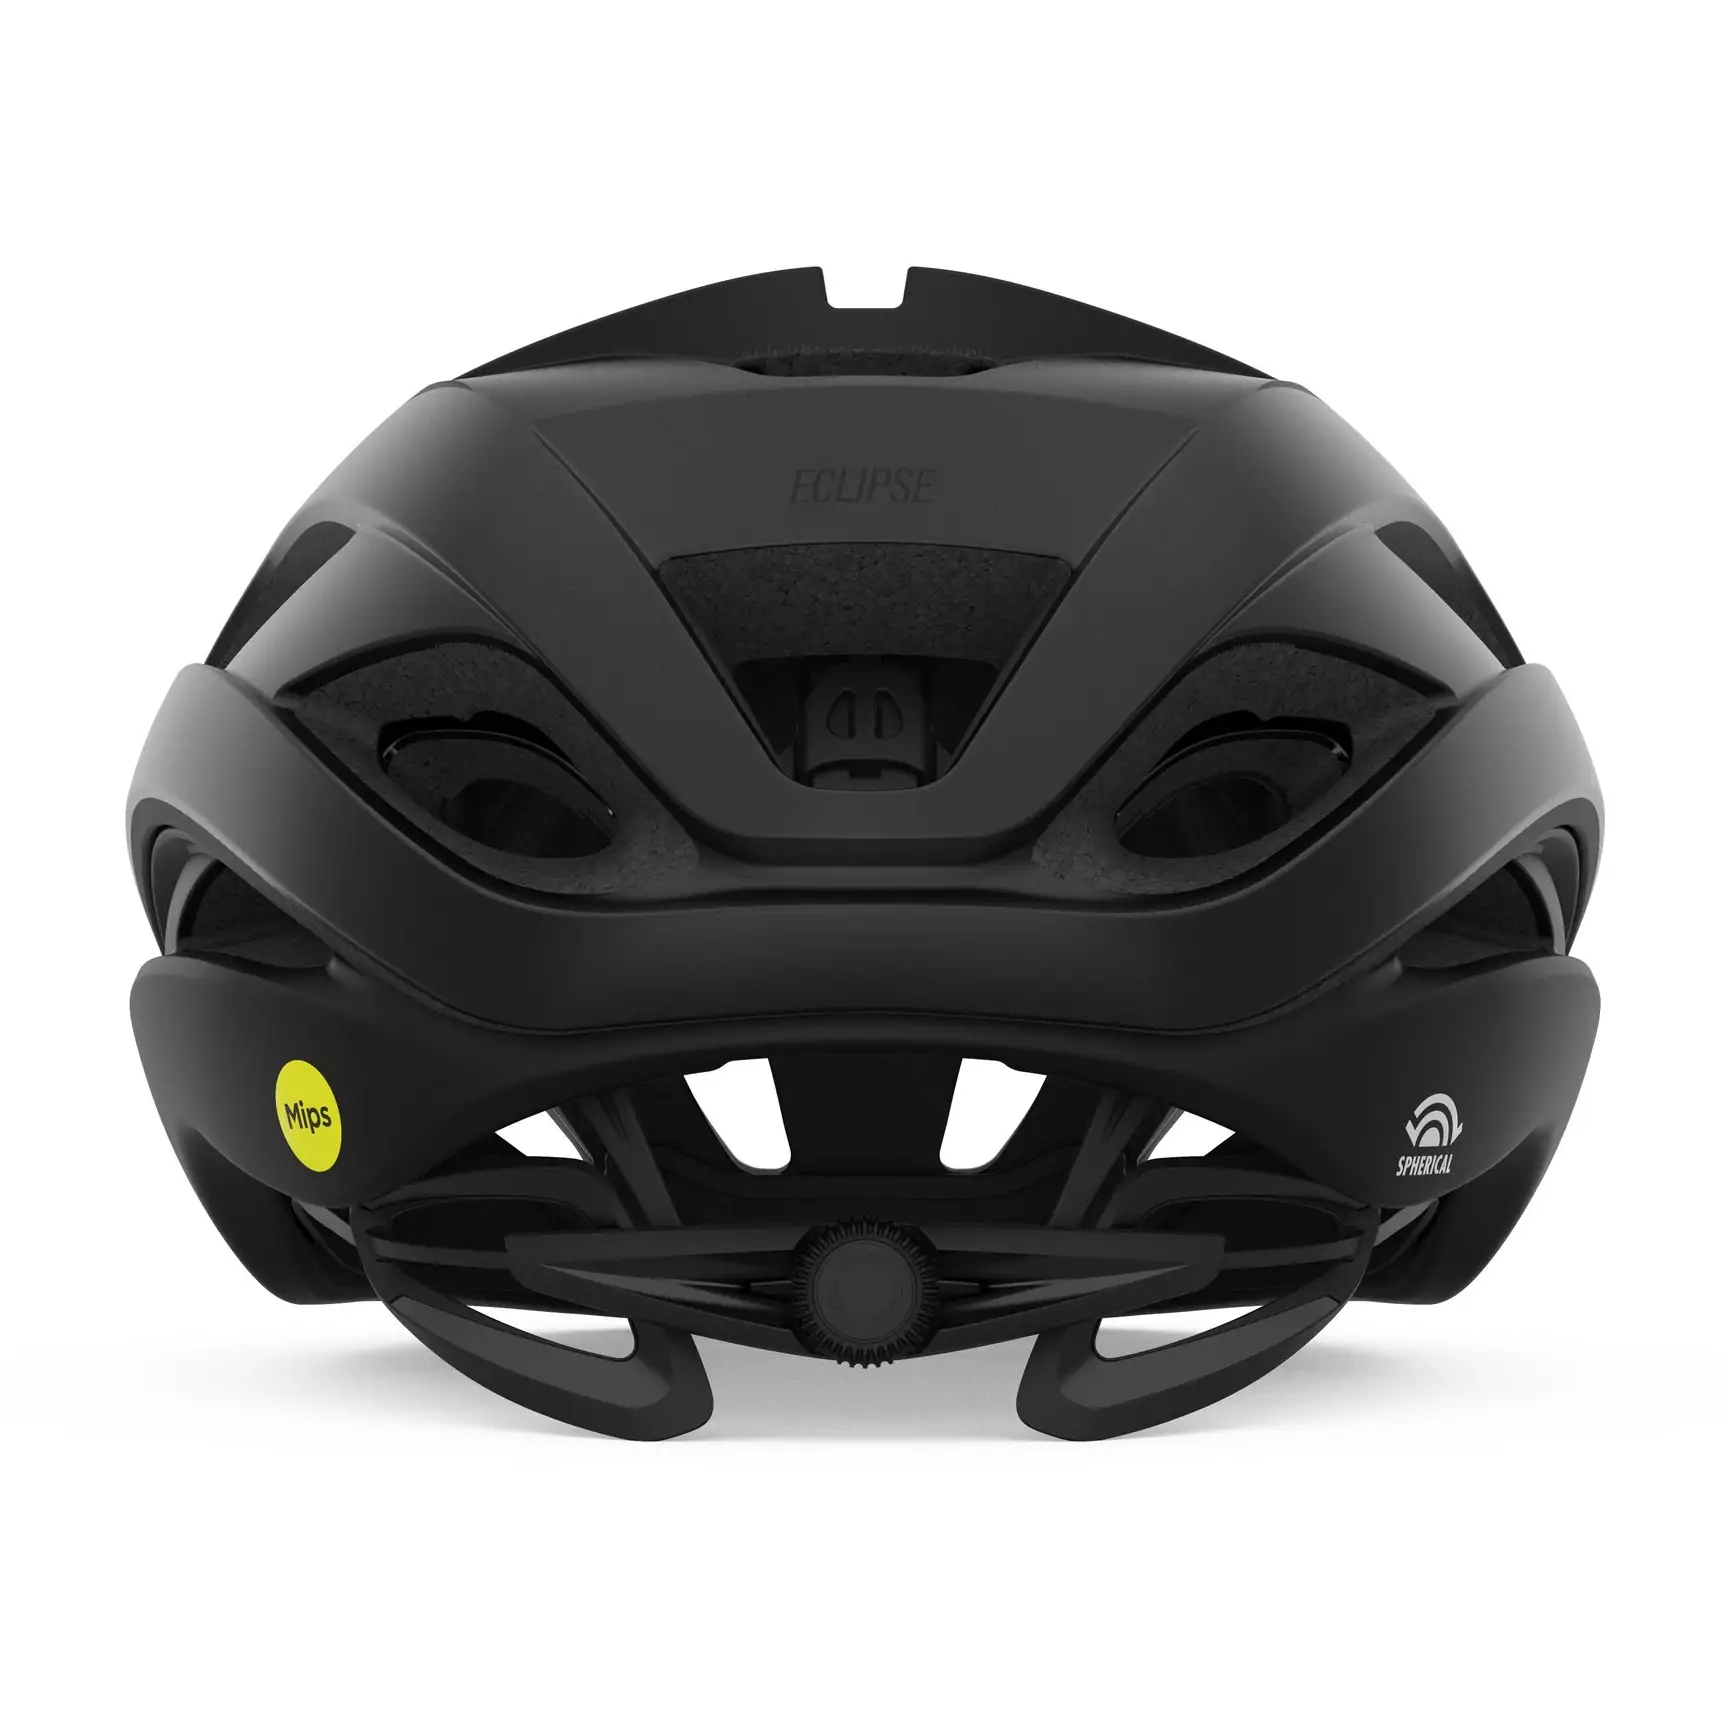 non bao hiem xe dap giro eclipse spherical helmet 4 Nón bảo hiểm xe đạp Giro Eclipse Spherical - YCB.vn